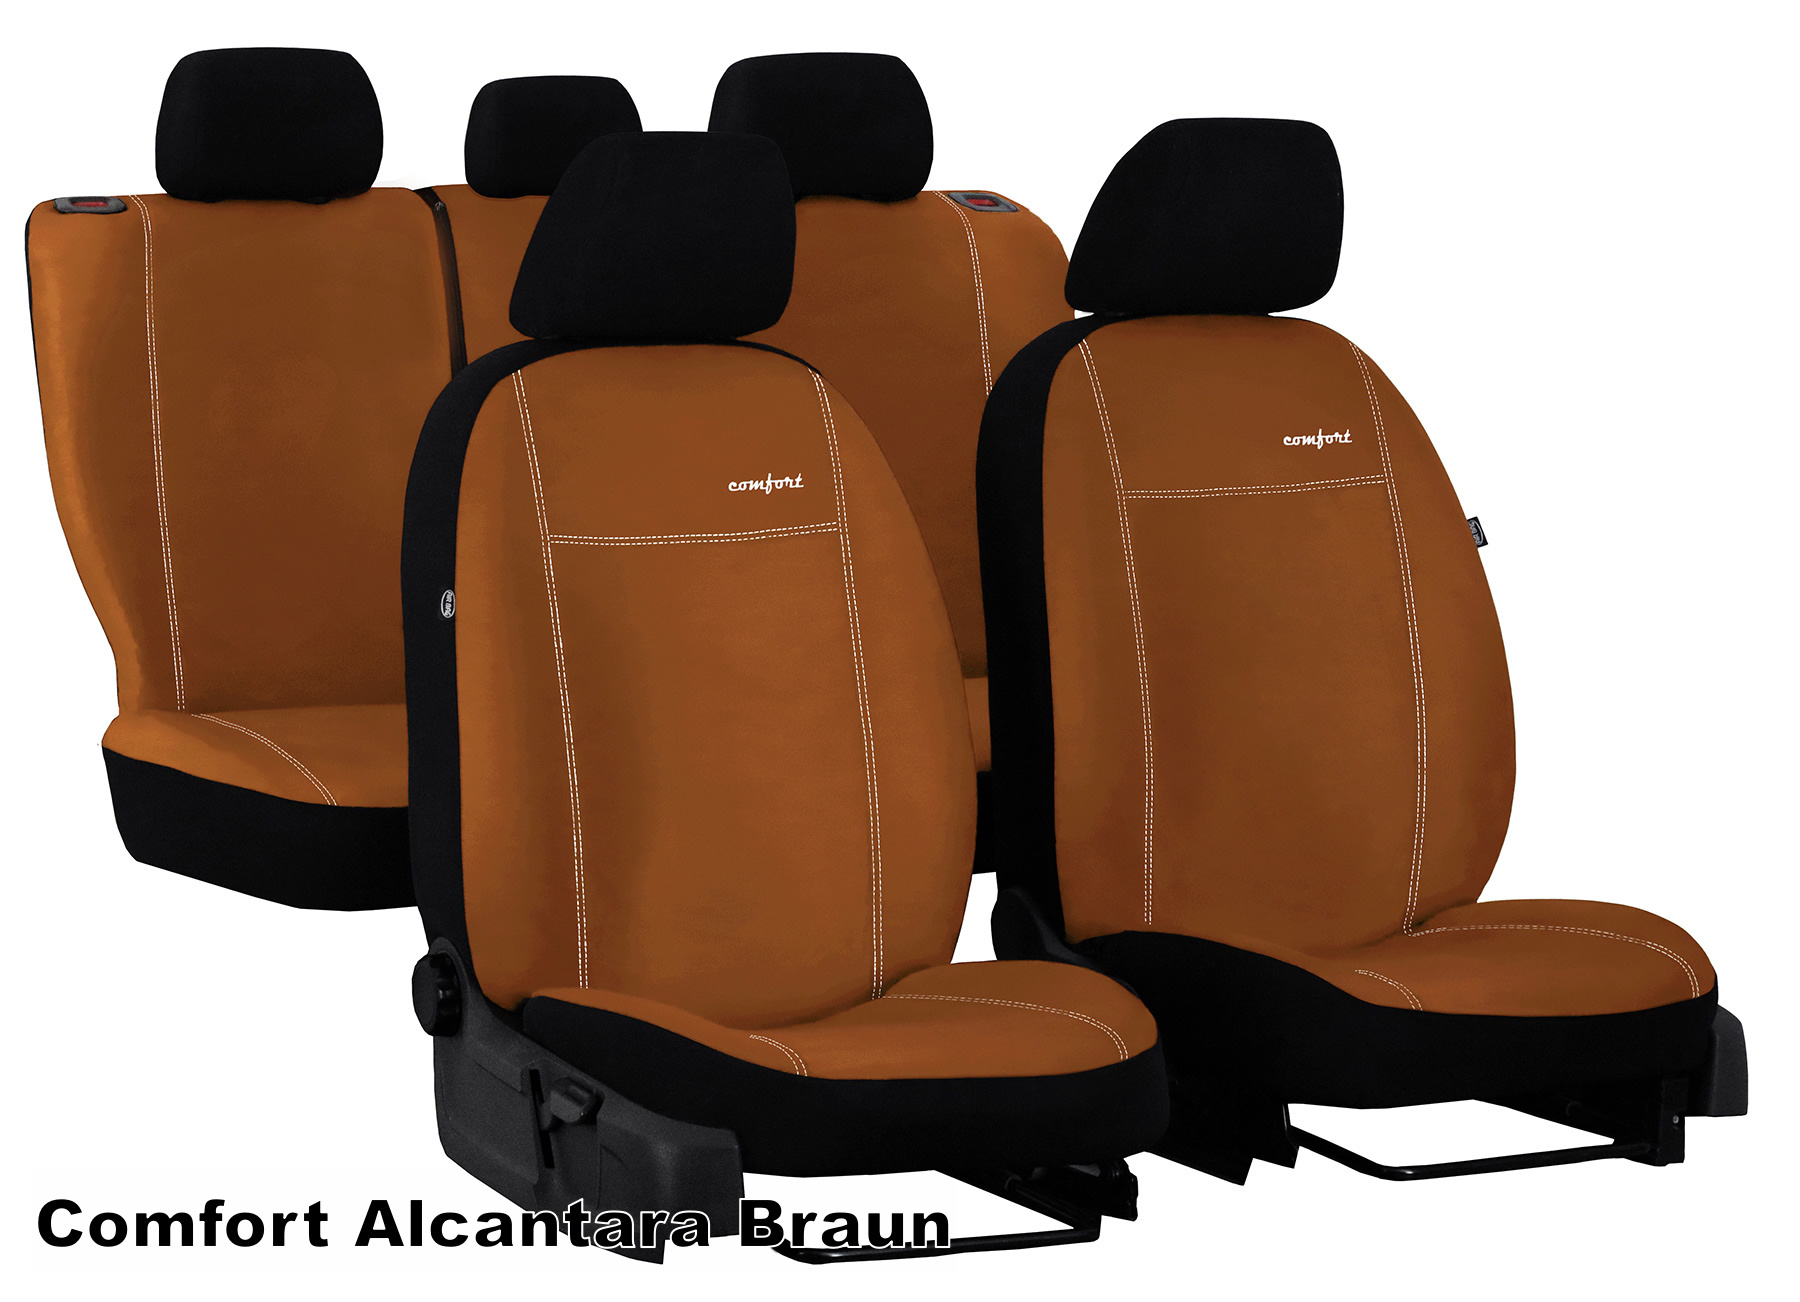 Maßgefertigtes Reisetaschen Set für Skoda Kamiq - Maluch Premium Autozubehör